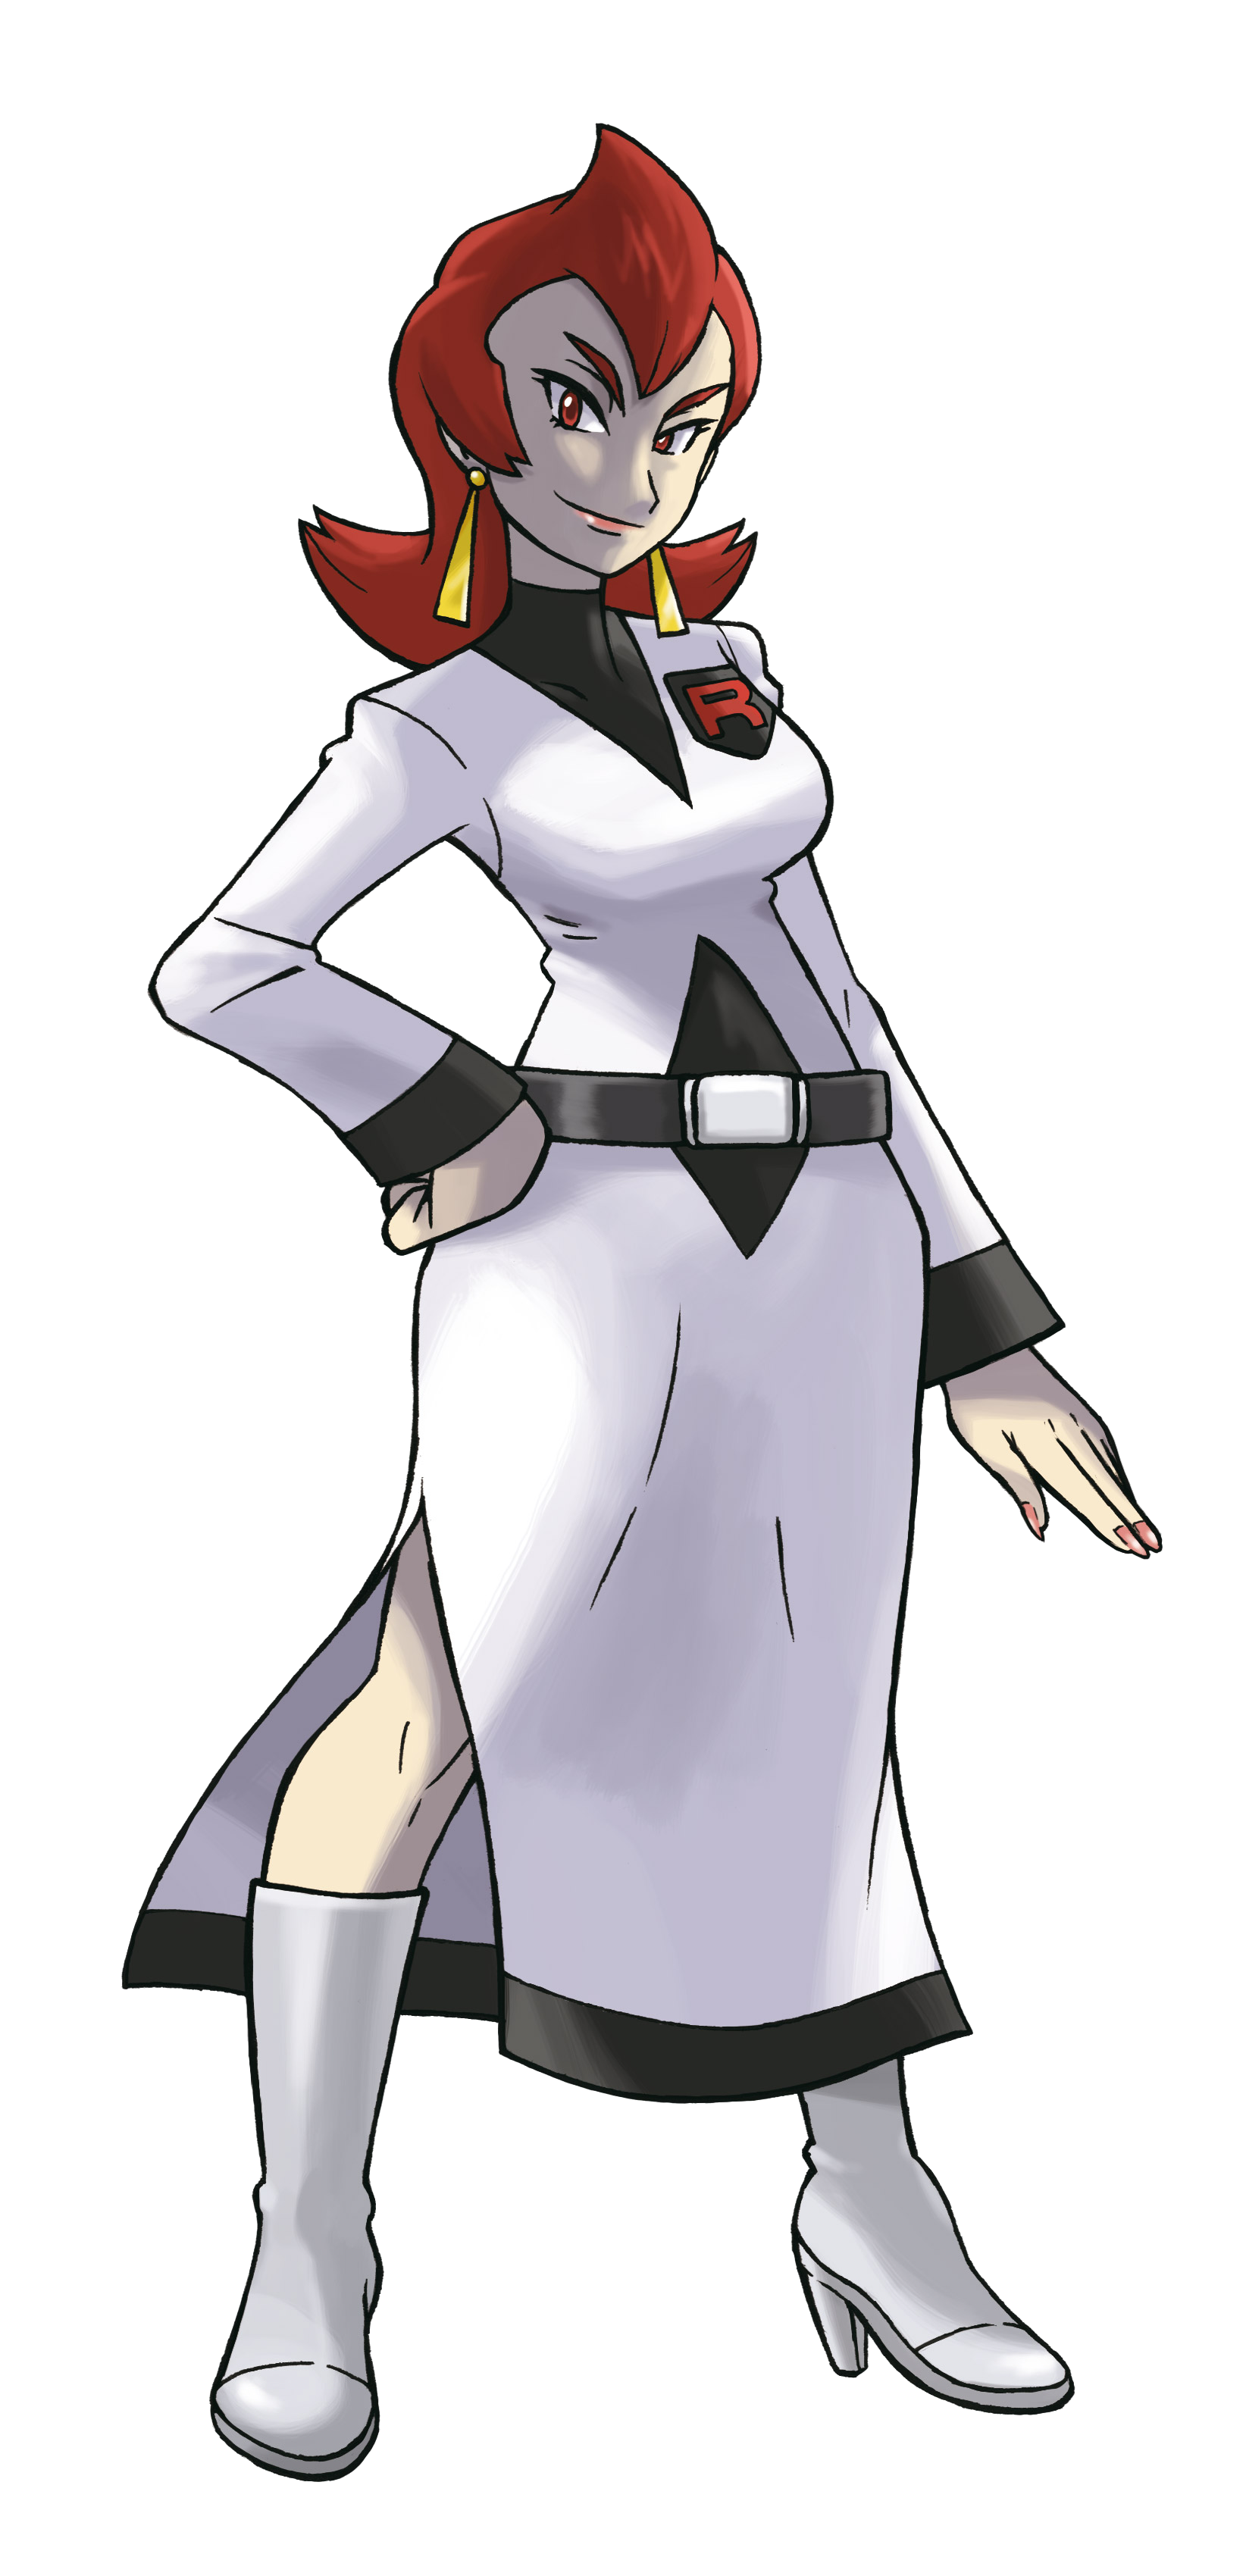 Dr. Fuji (anime) - Bulbapedia, the community-driven Pokémon